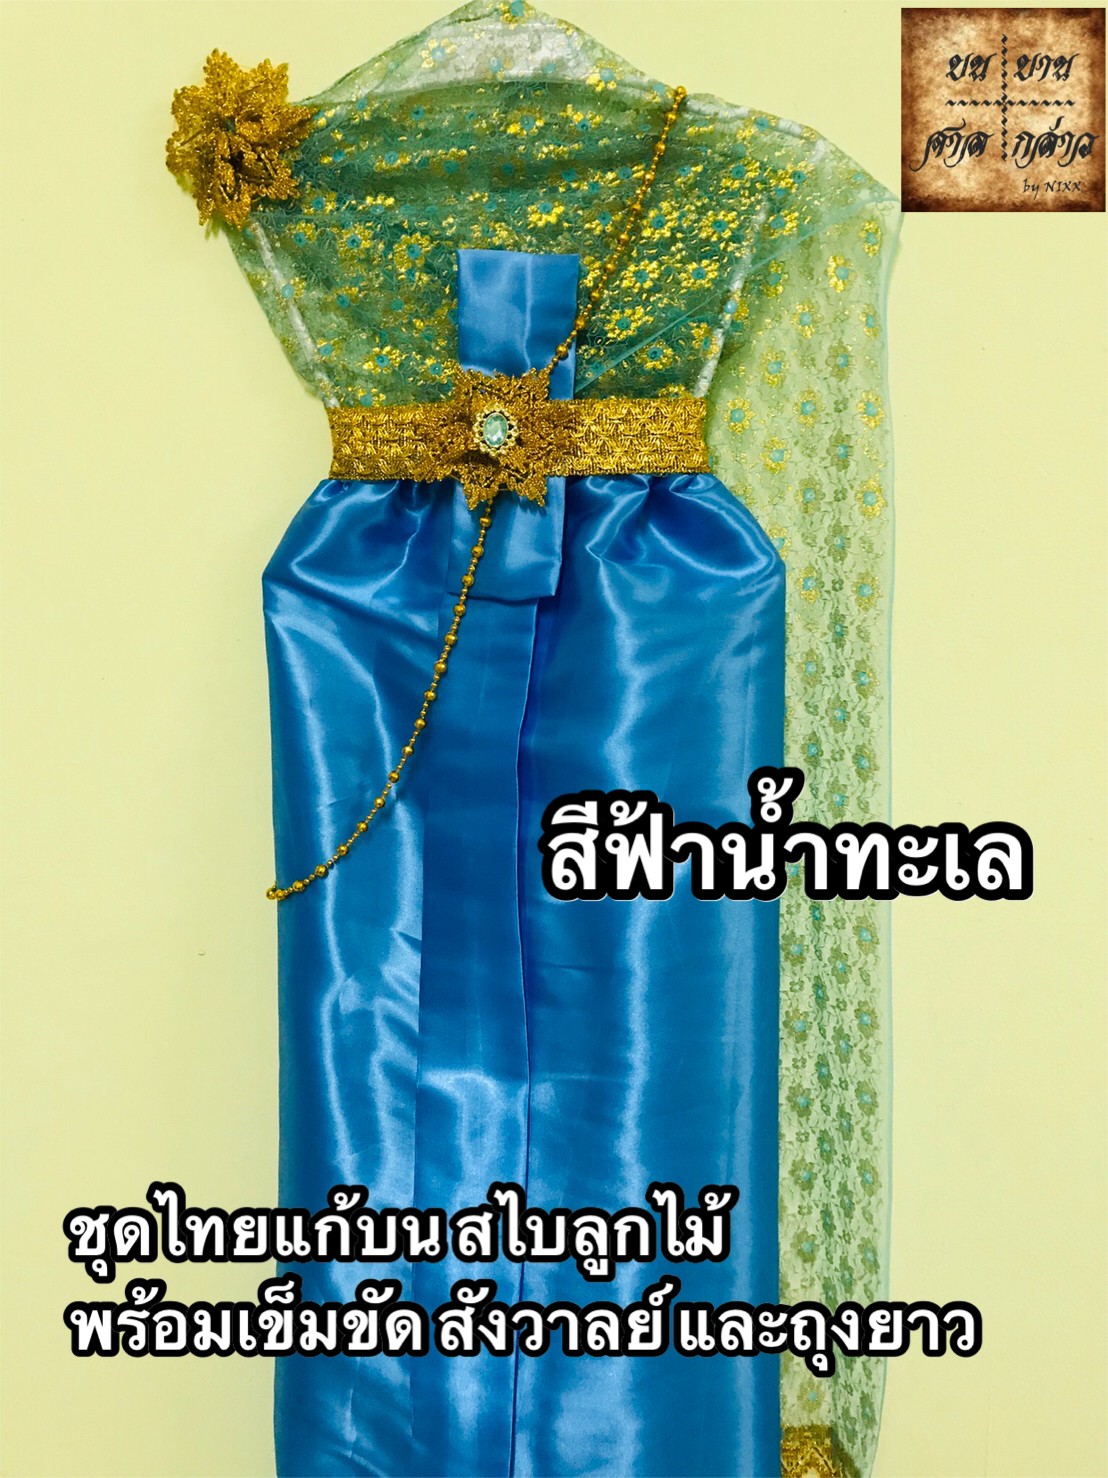 ชุดไทยแก้บน สไบลูกไม้ ครบชุด (หลากสี) จำนวน 1ตัว